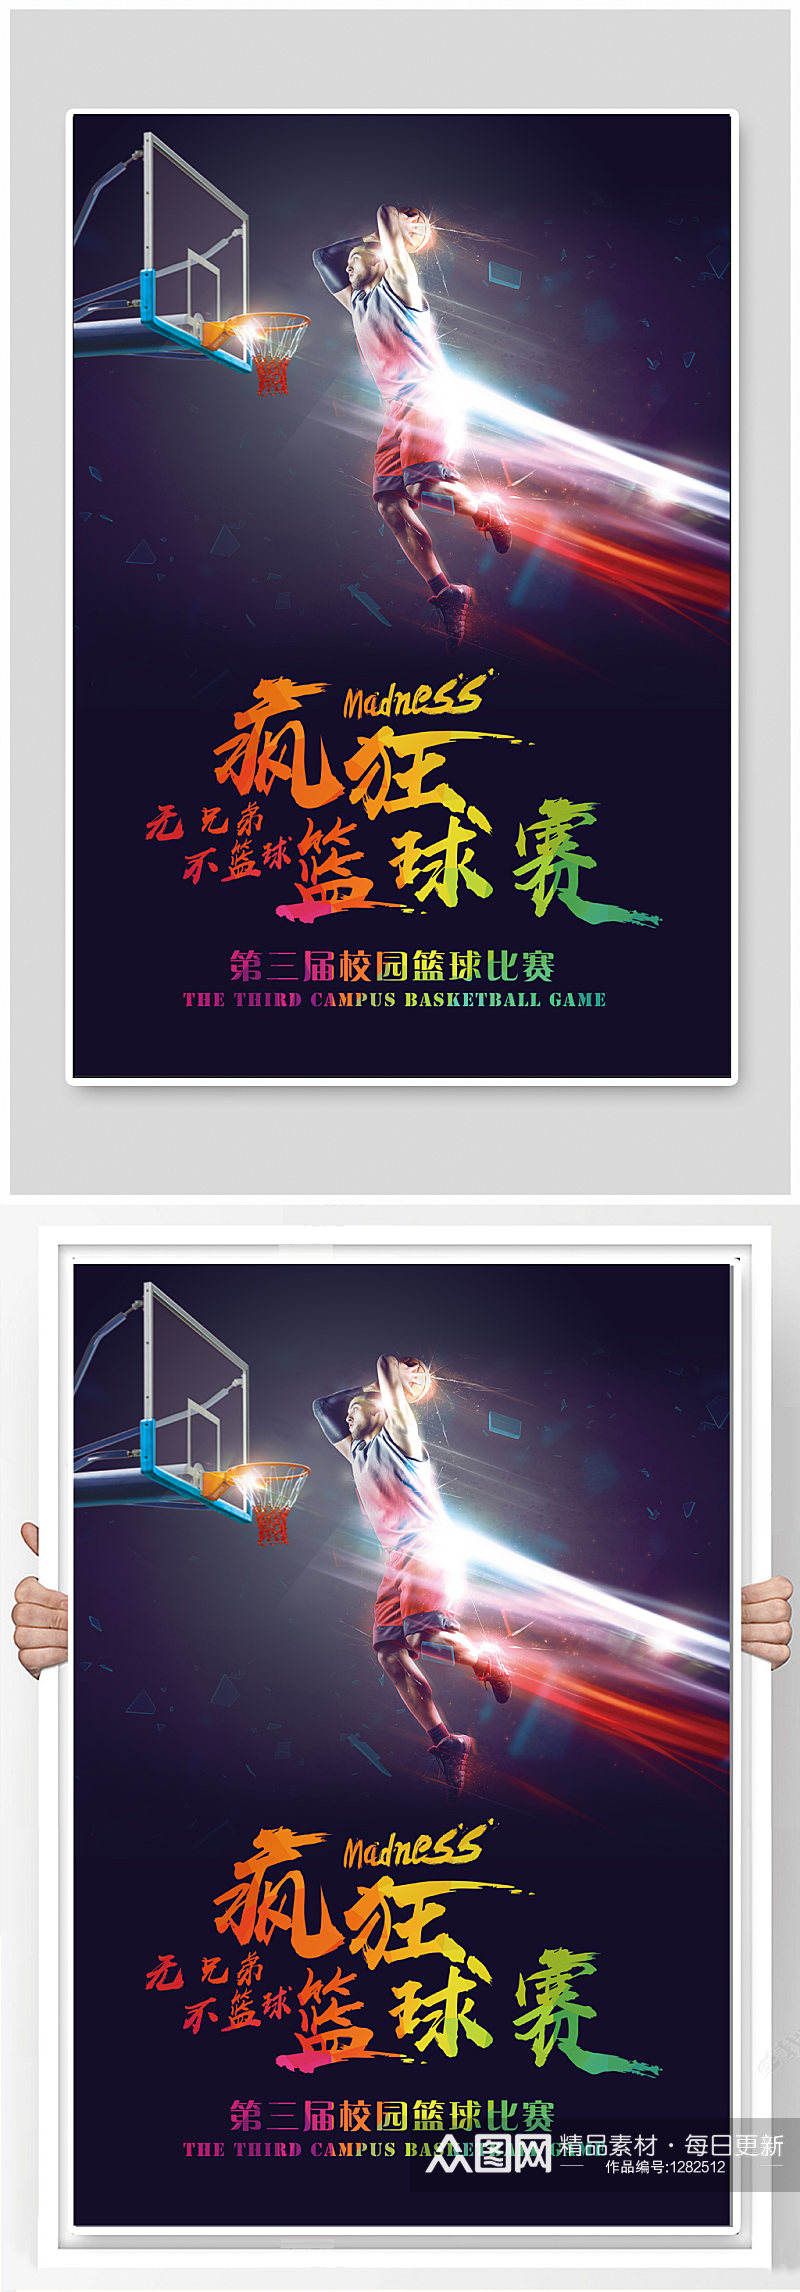 校园篮球比赛宣传海报素材